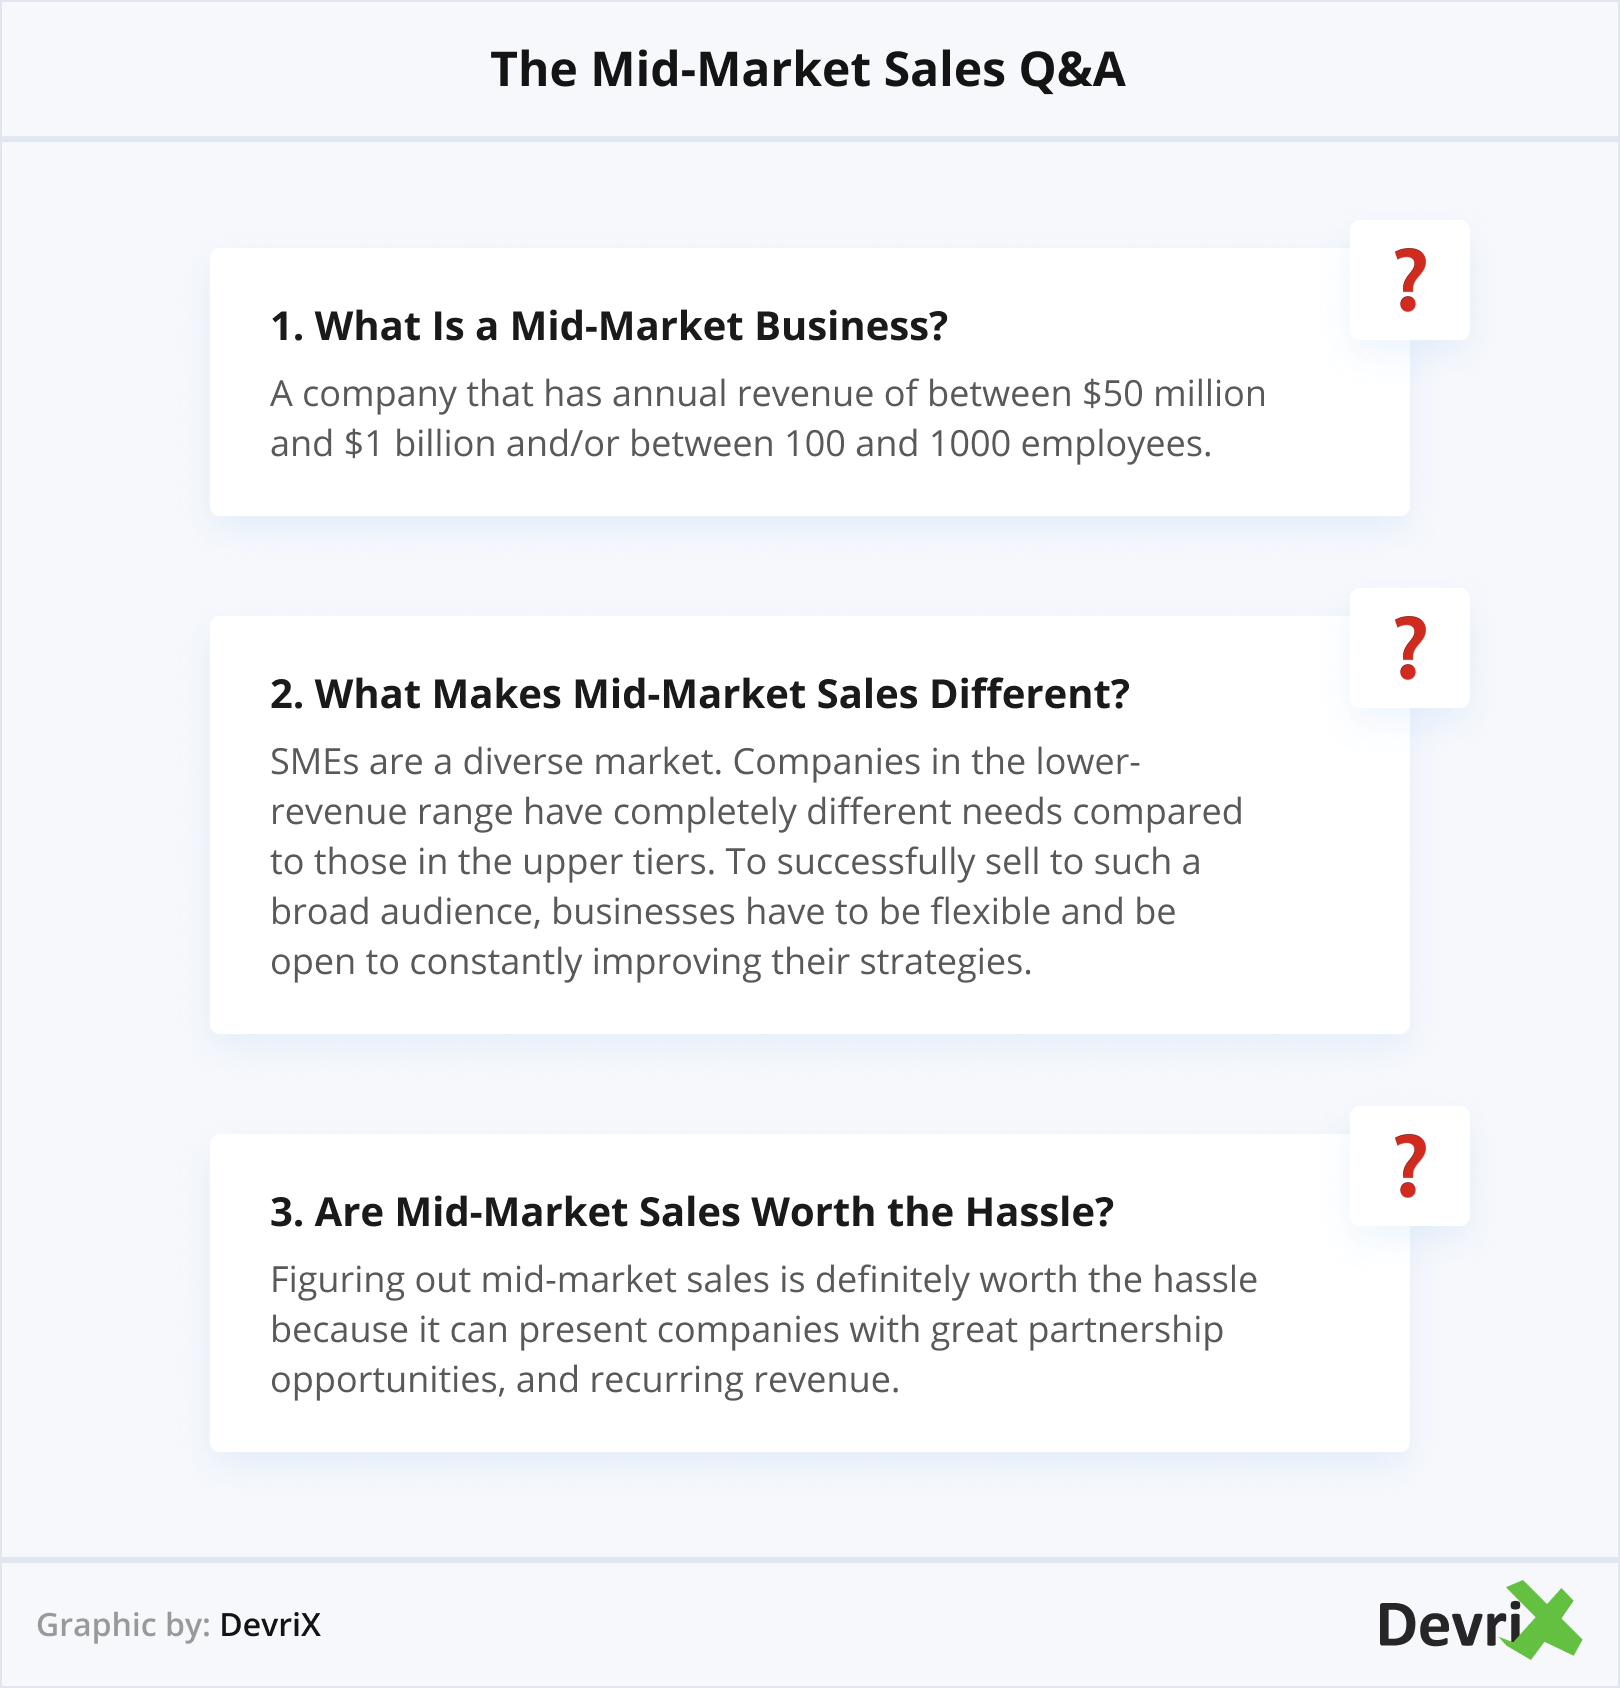 The Mid-Market Sales Q&A